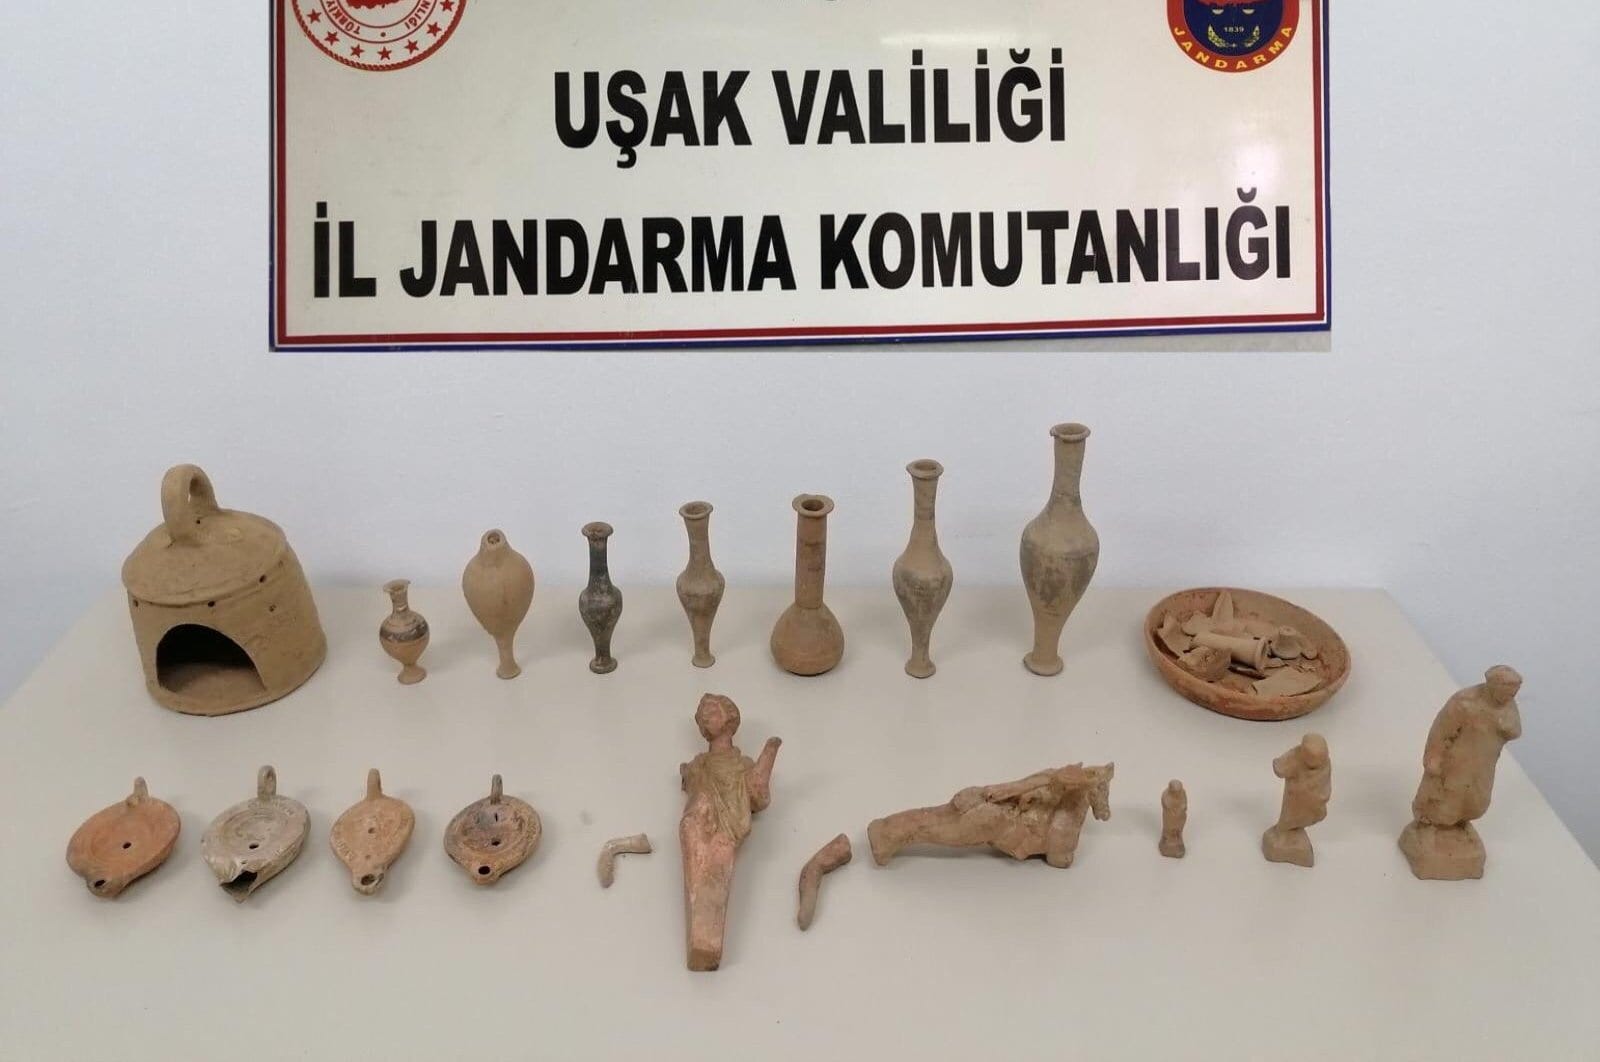 18 исторических артефактов изъяты у контрабандистов в западной Турции